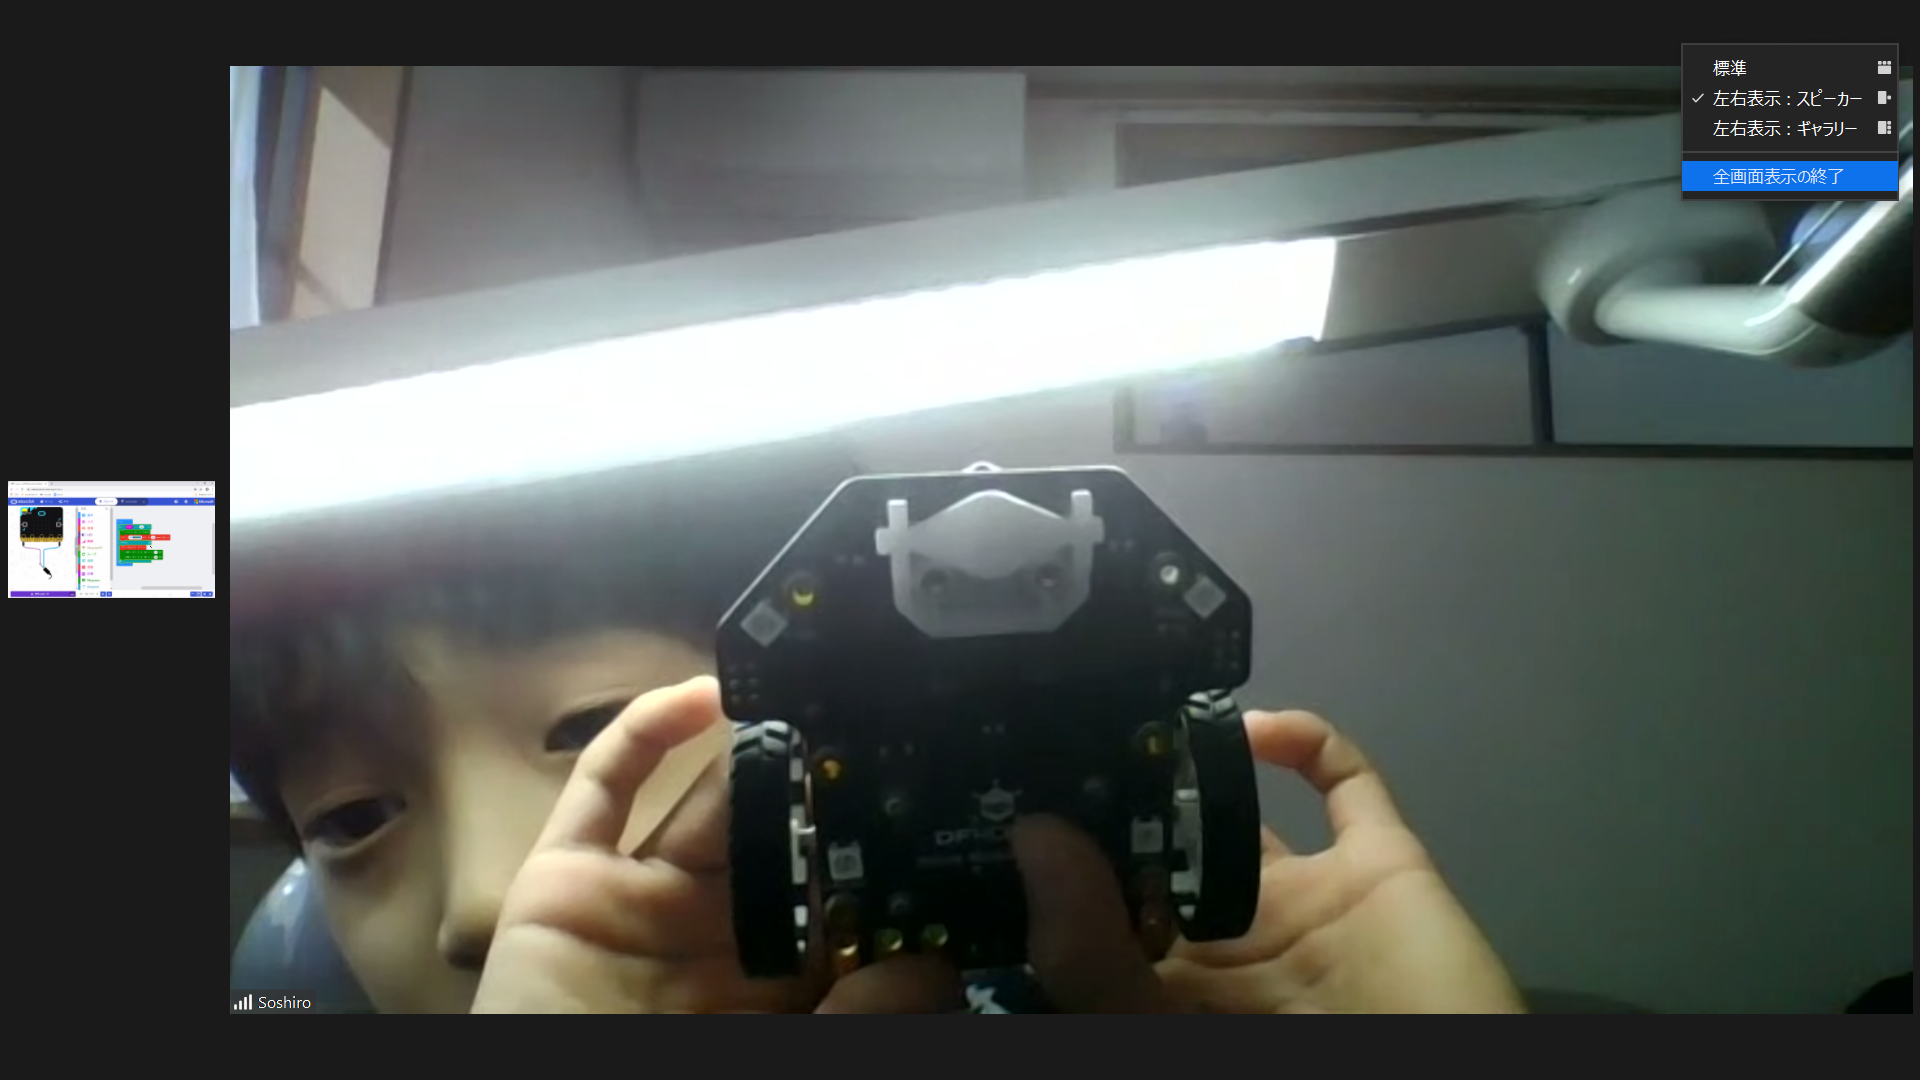 micro:bitの光センサーを使ったプログラムの発表